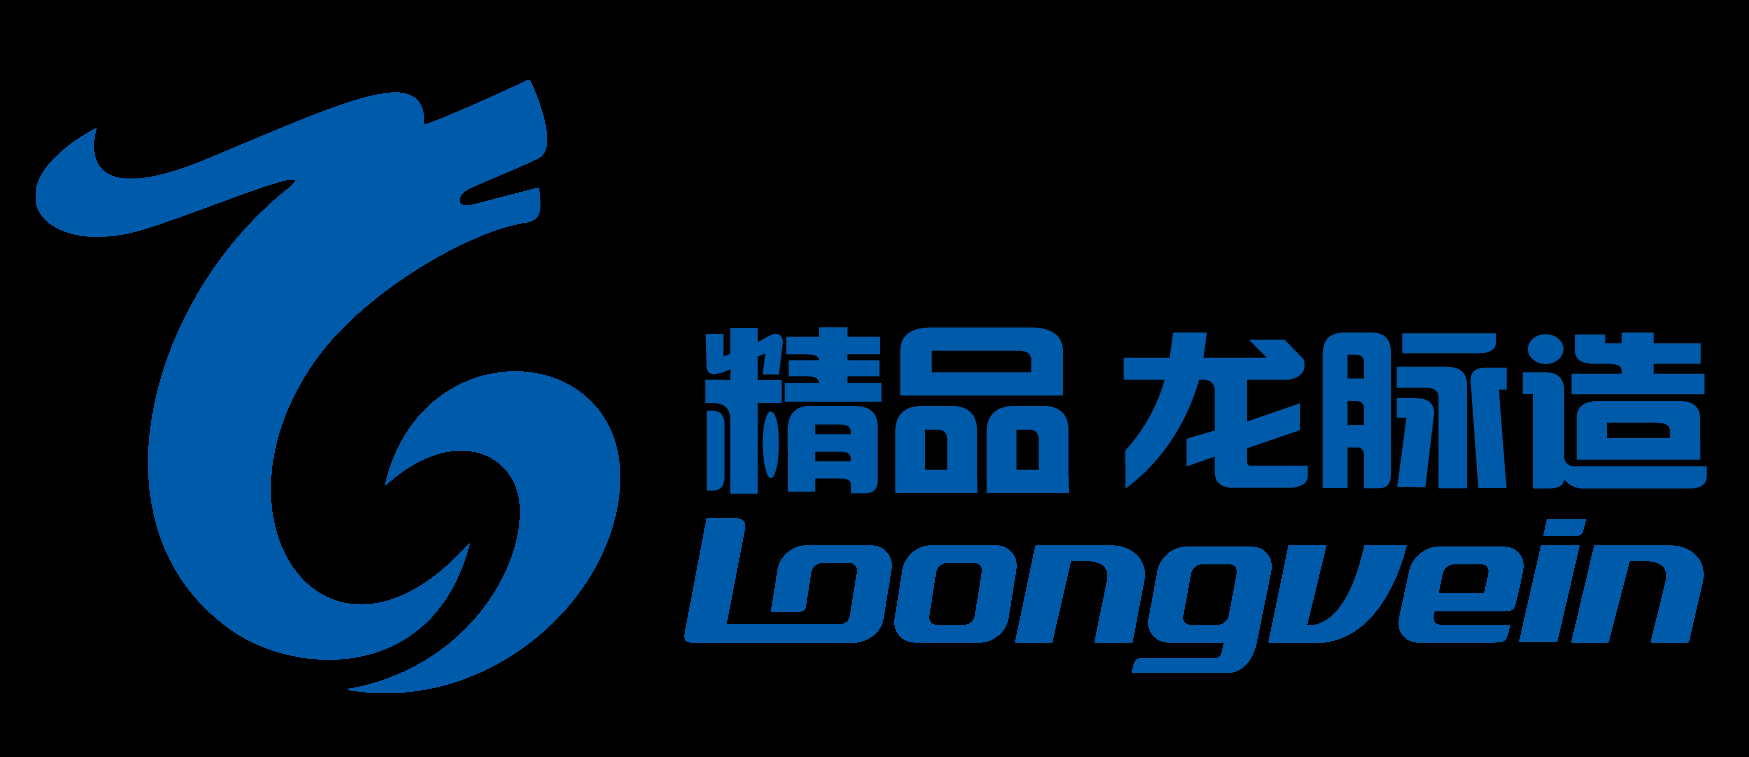 重庆龙脉电子有限公司 Logo